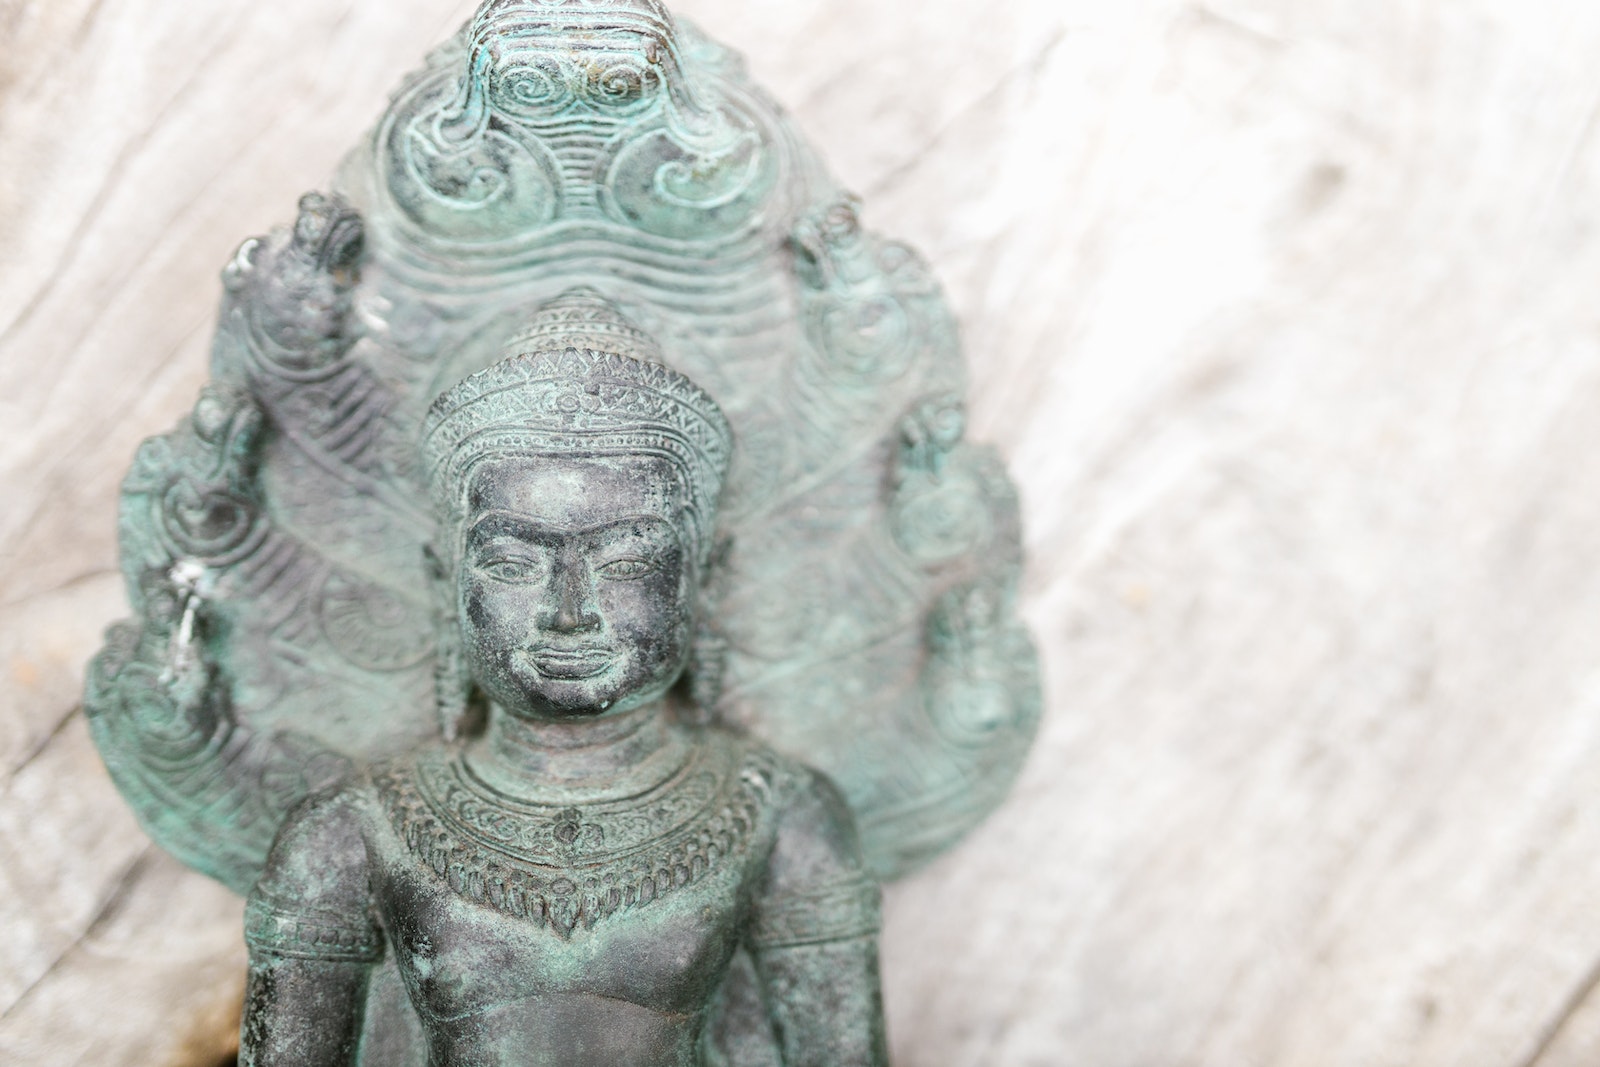 An Antique Brass Buddha Statue